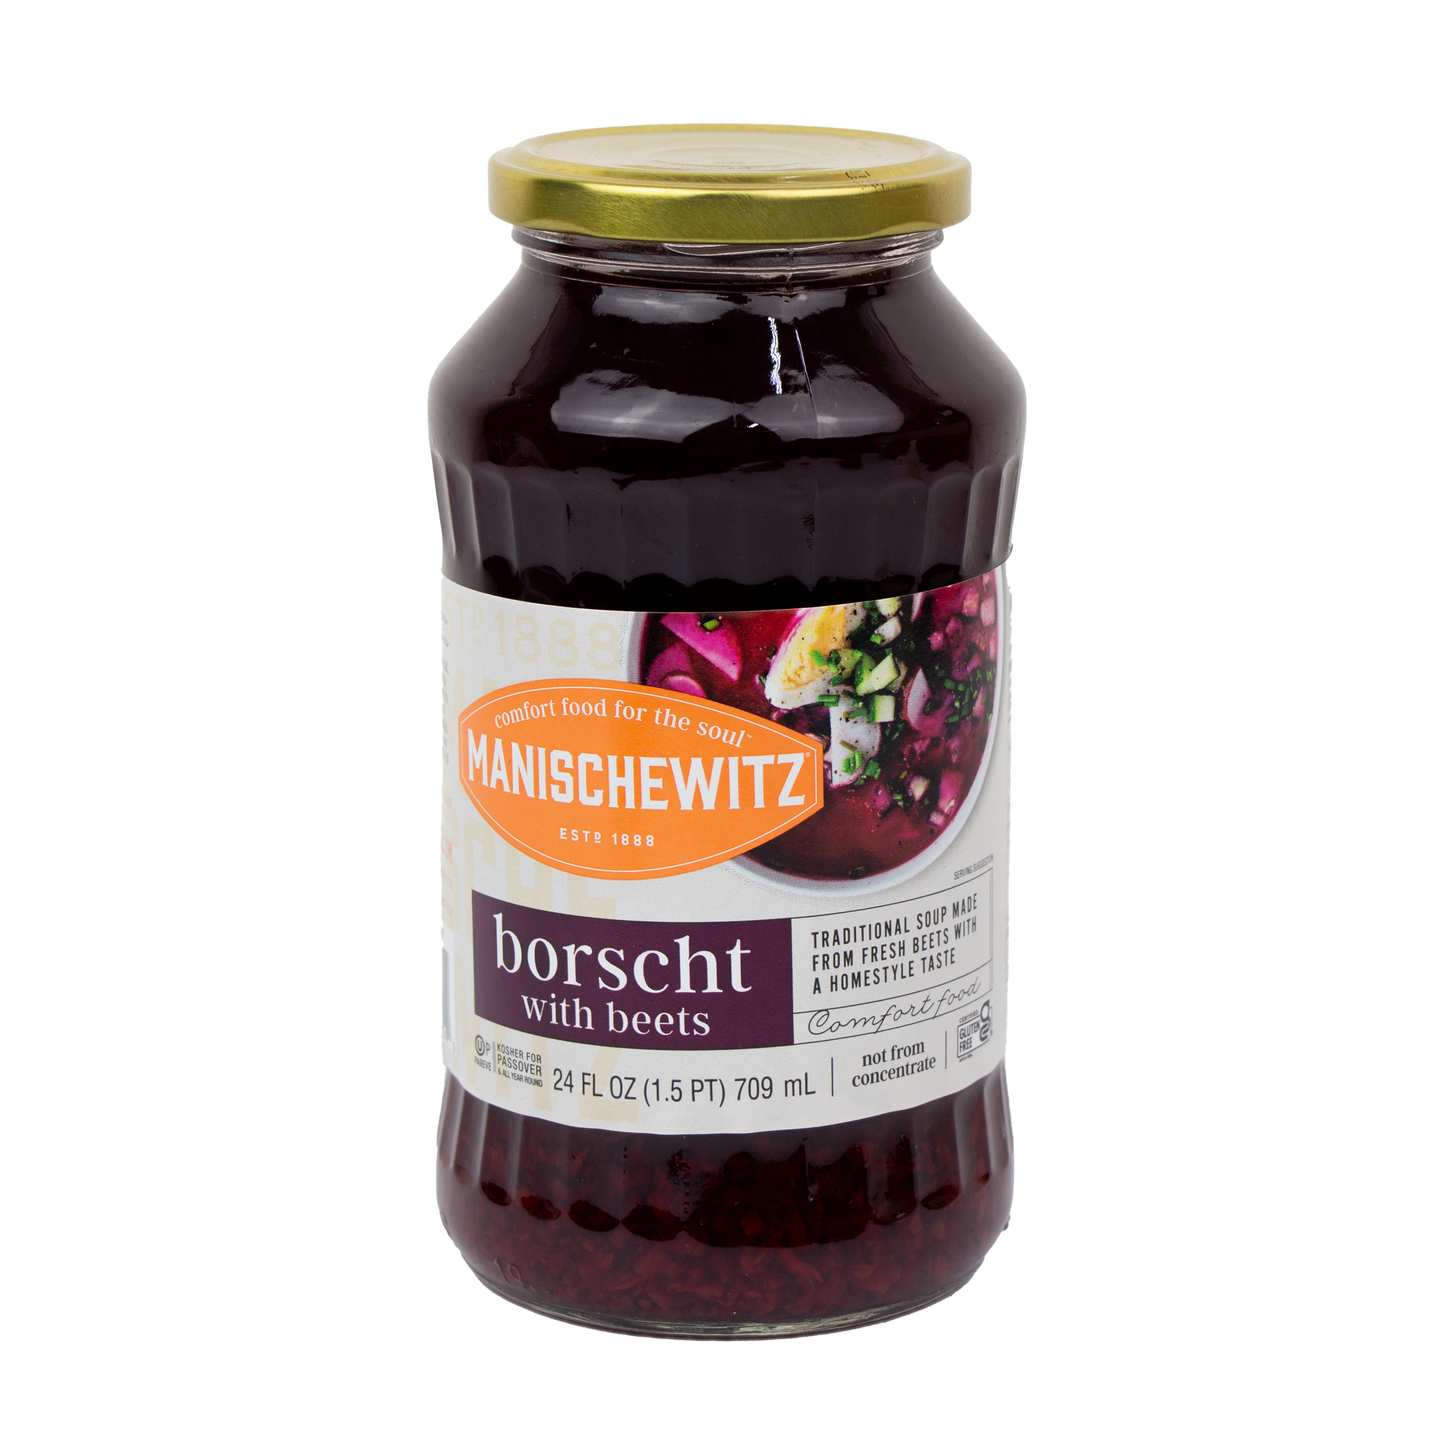 Manischewitz - Borscht with Beets